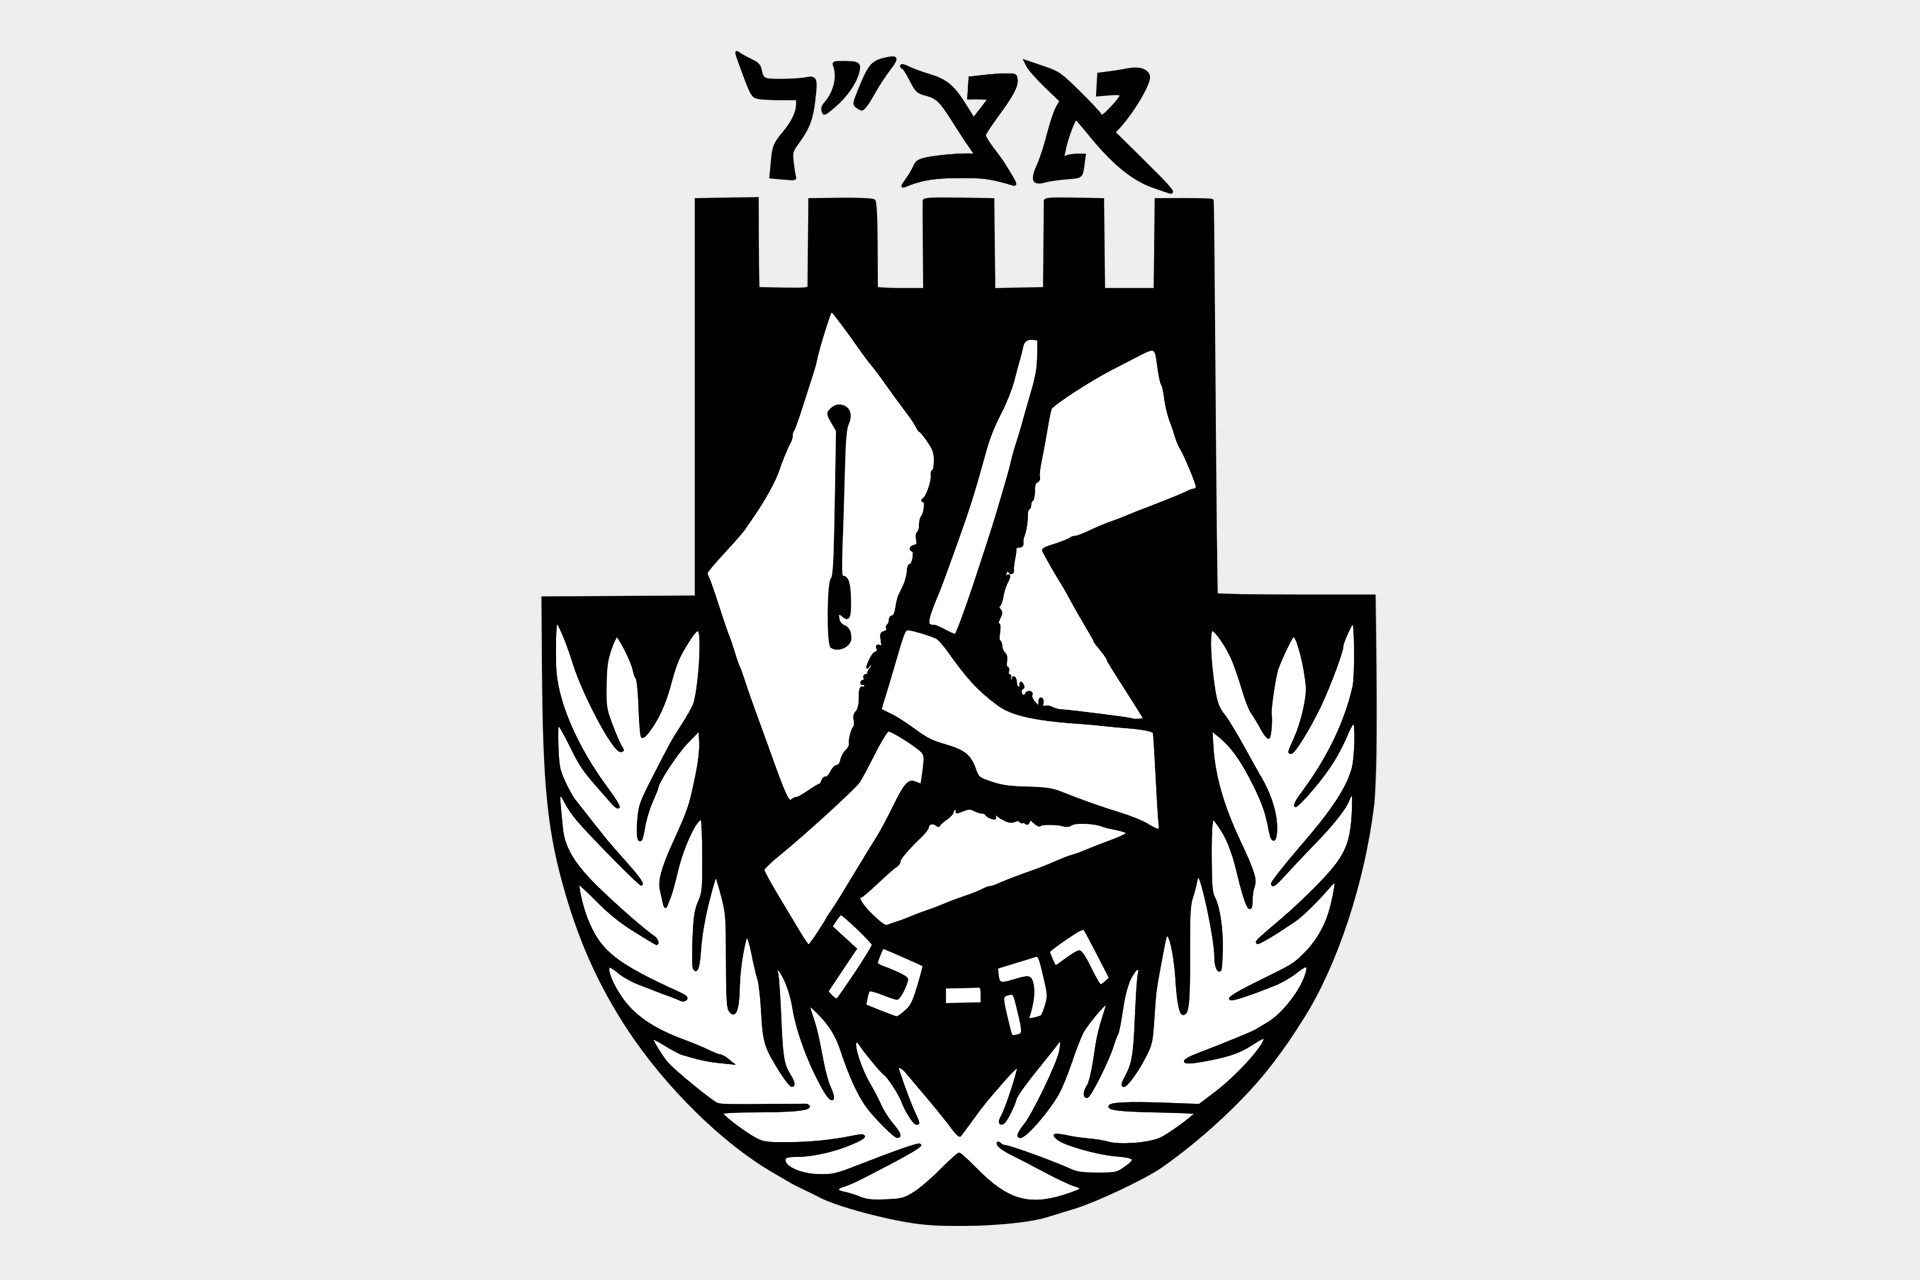 منظمة أرغون.. منظمة صهيونية مسلحة أدمجت في جيش إسرائيل | الموسوعة – البوكس نيوز